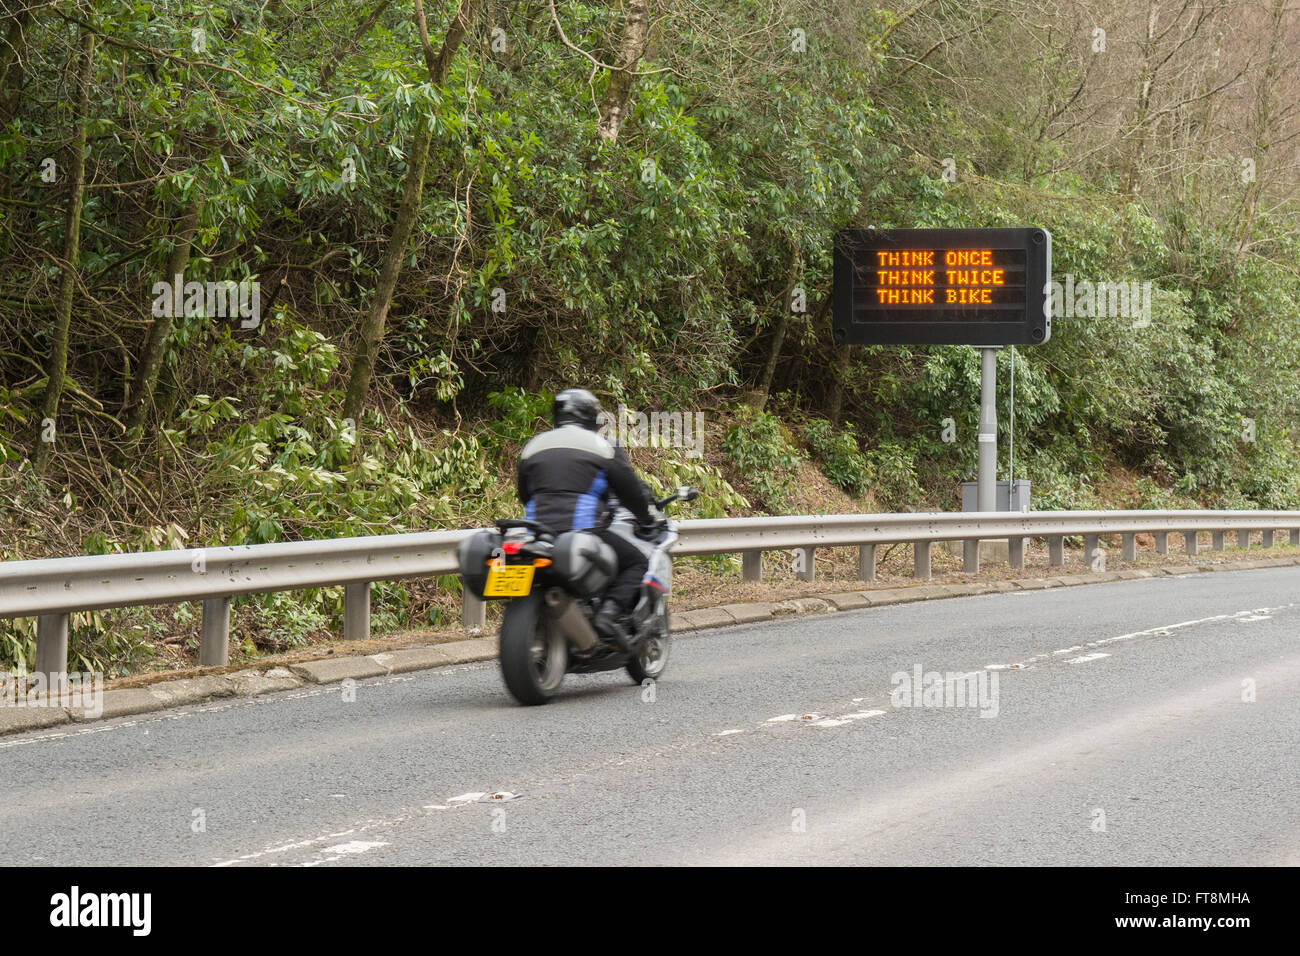 'Pensez Une fois pensez deux fois penser vélo' panneau d'avertissement de trafic sur A82 road, Tarbet, Ecosse, Royaume-Uni Banque D'Images